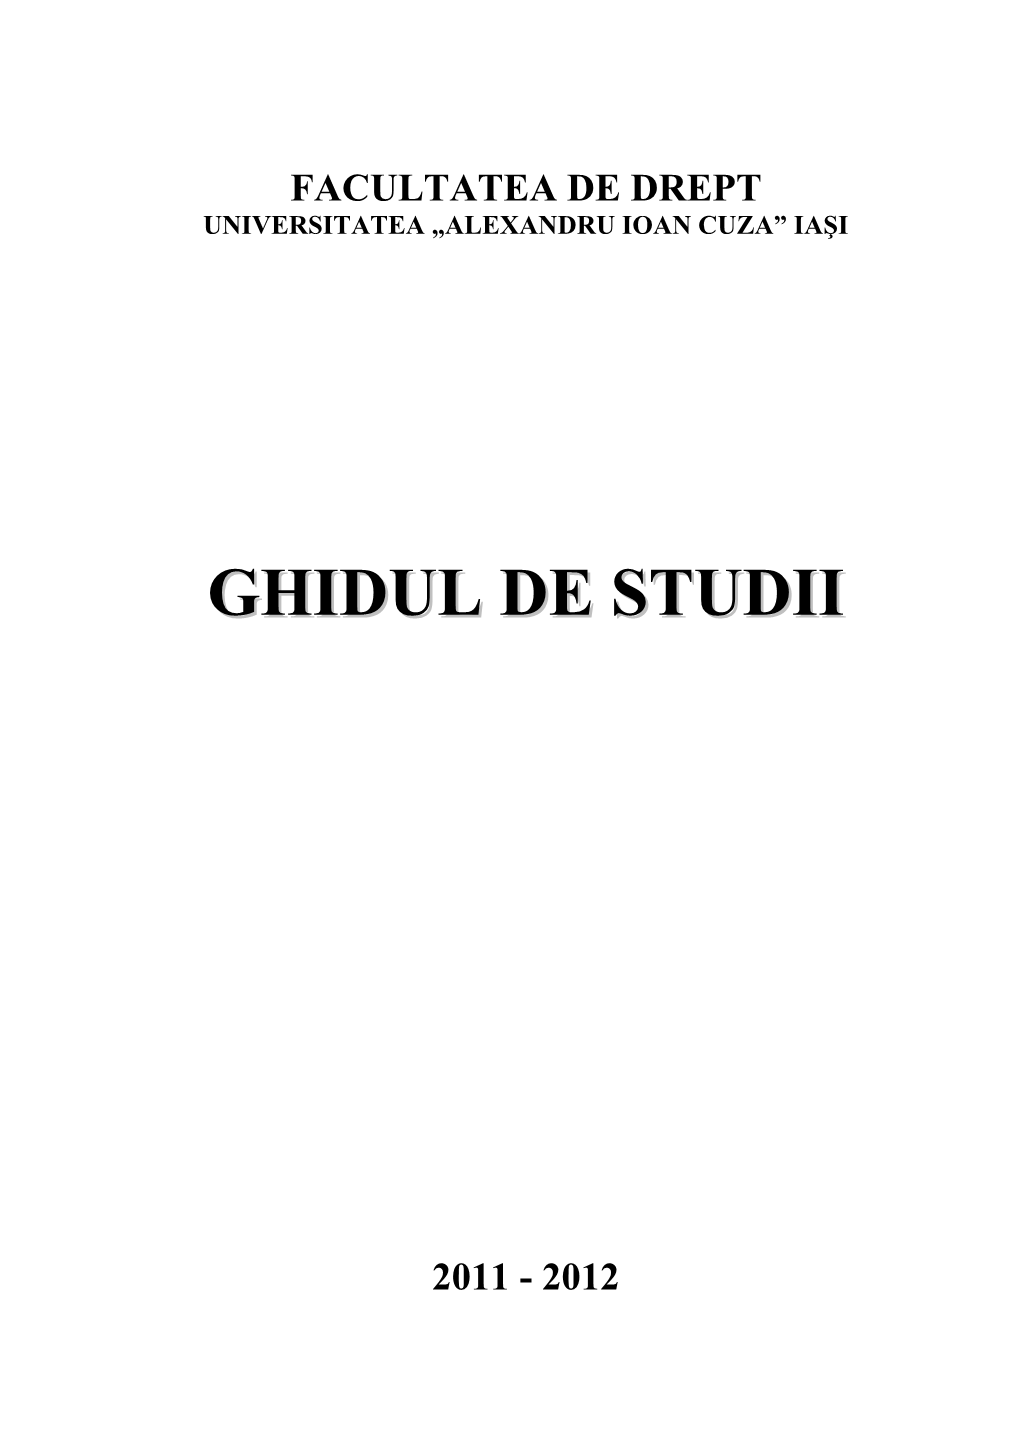 Ghidul De Studii 2011-2012